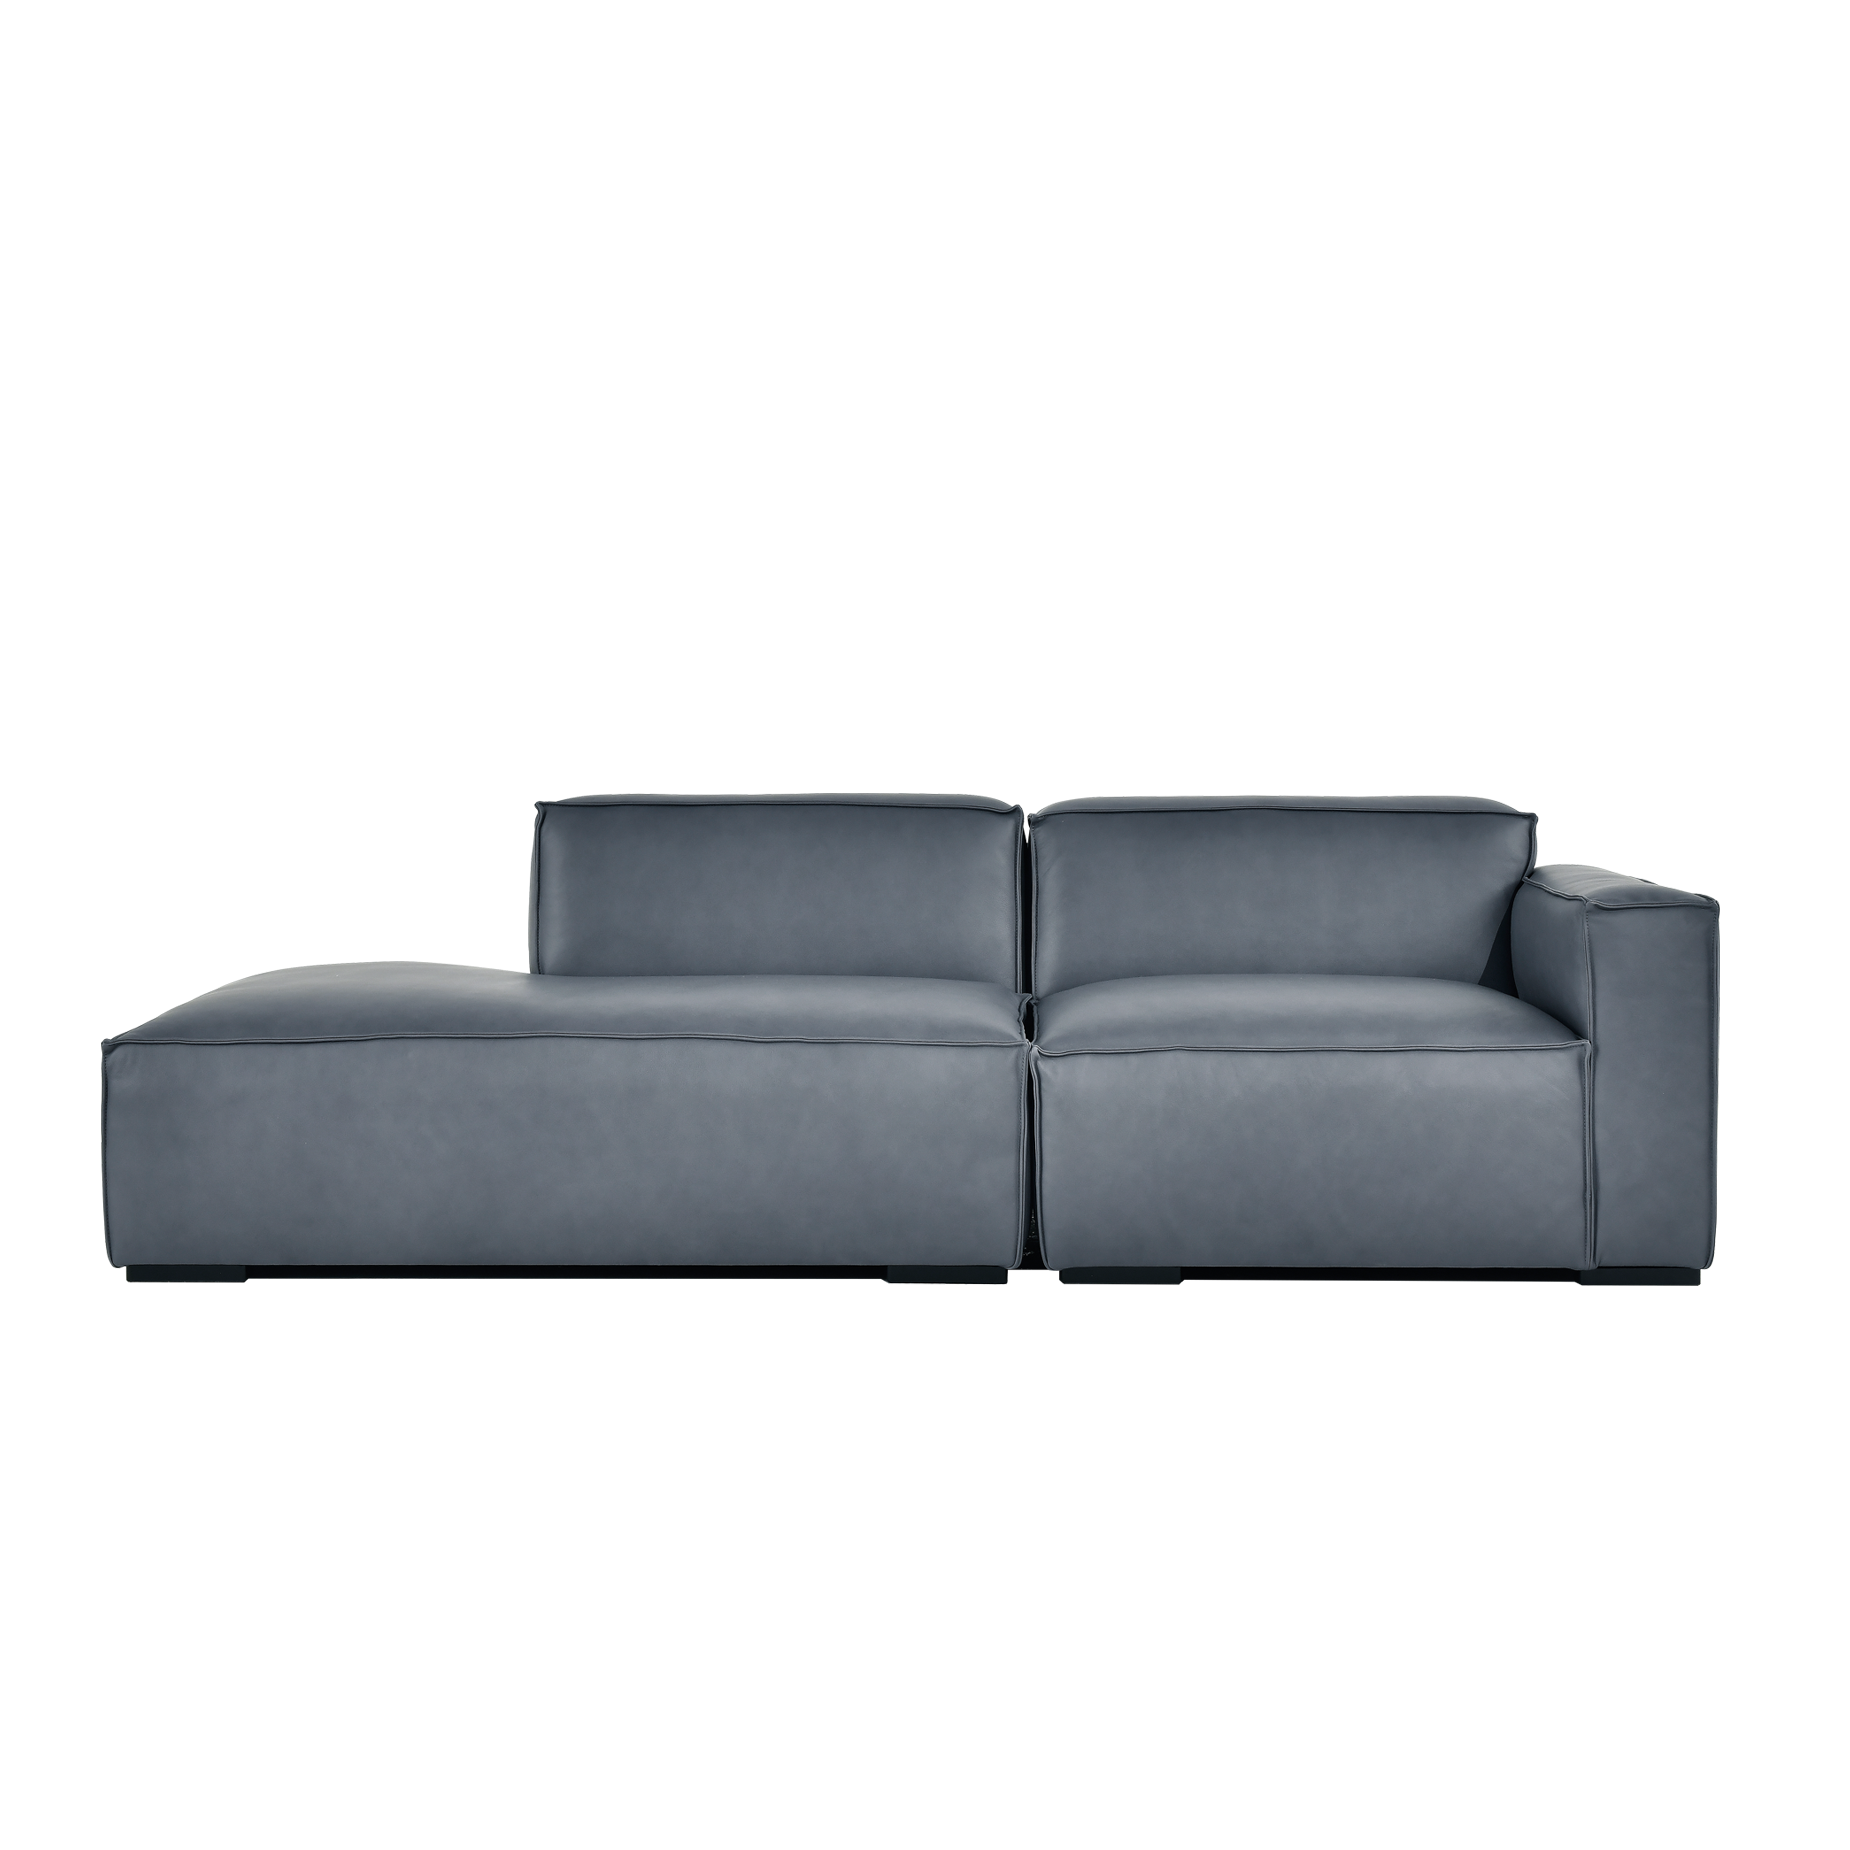 (주)도이치 DOICH ®    PEN2 modular couch sofa 도이치 펜2 3인 카우치 모듈소파  [4주 주문제작]